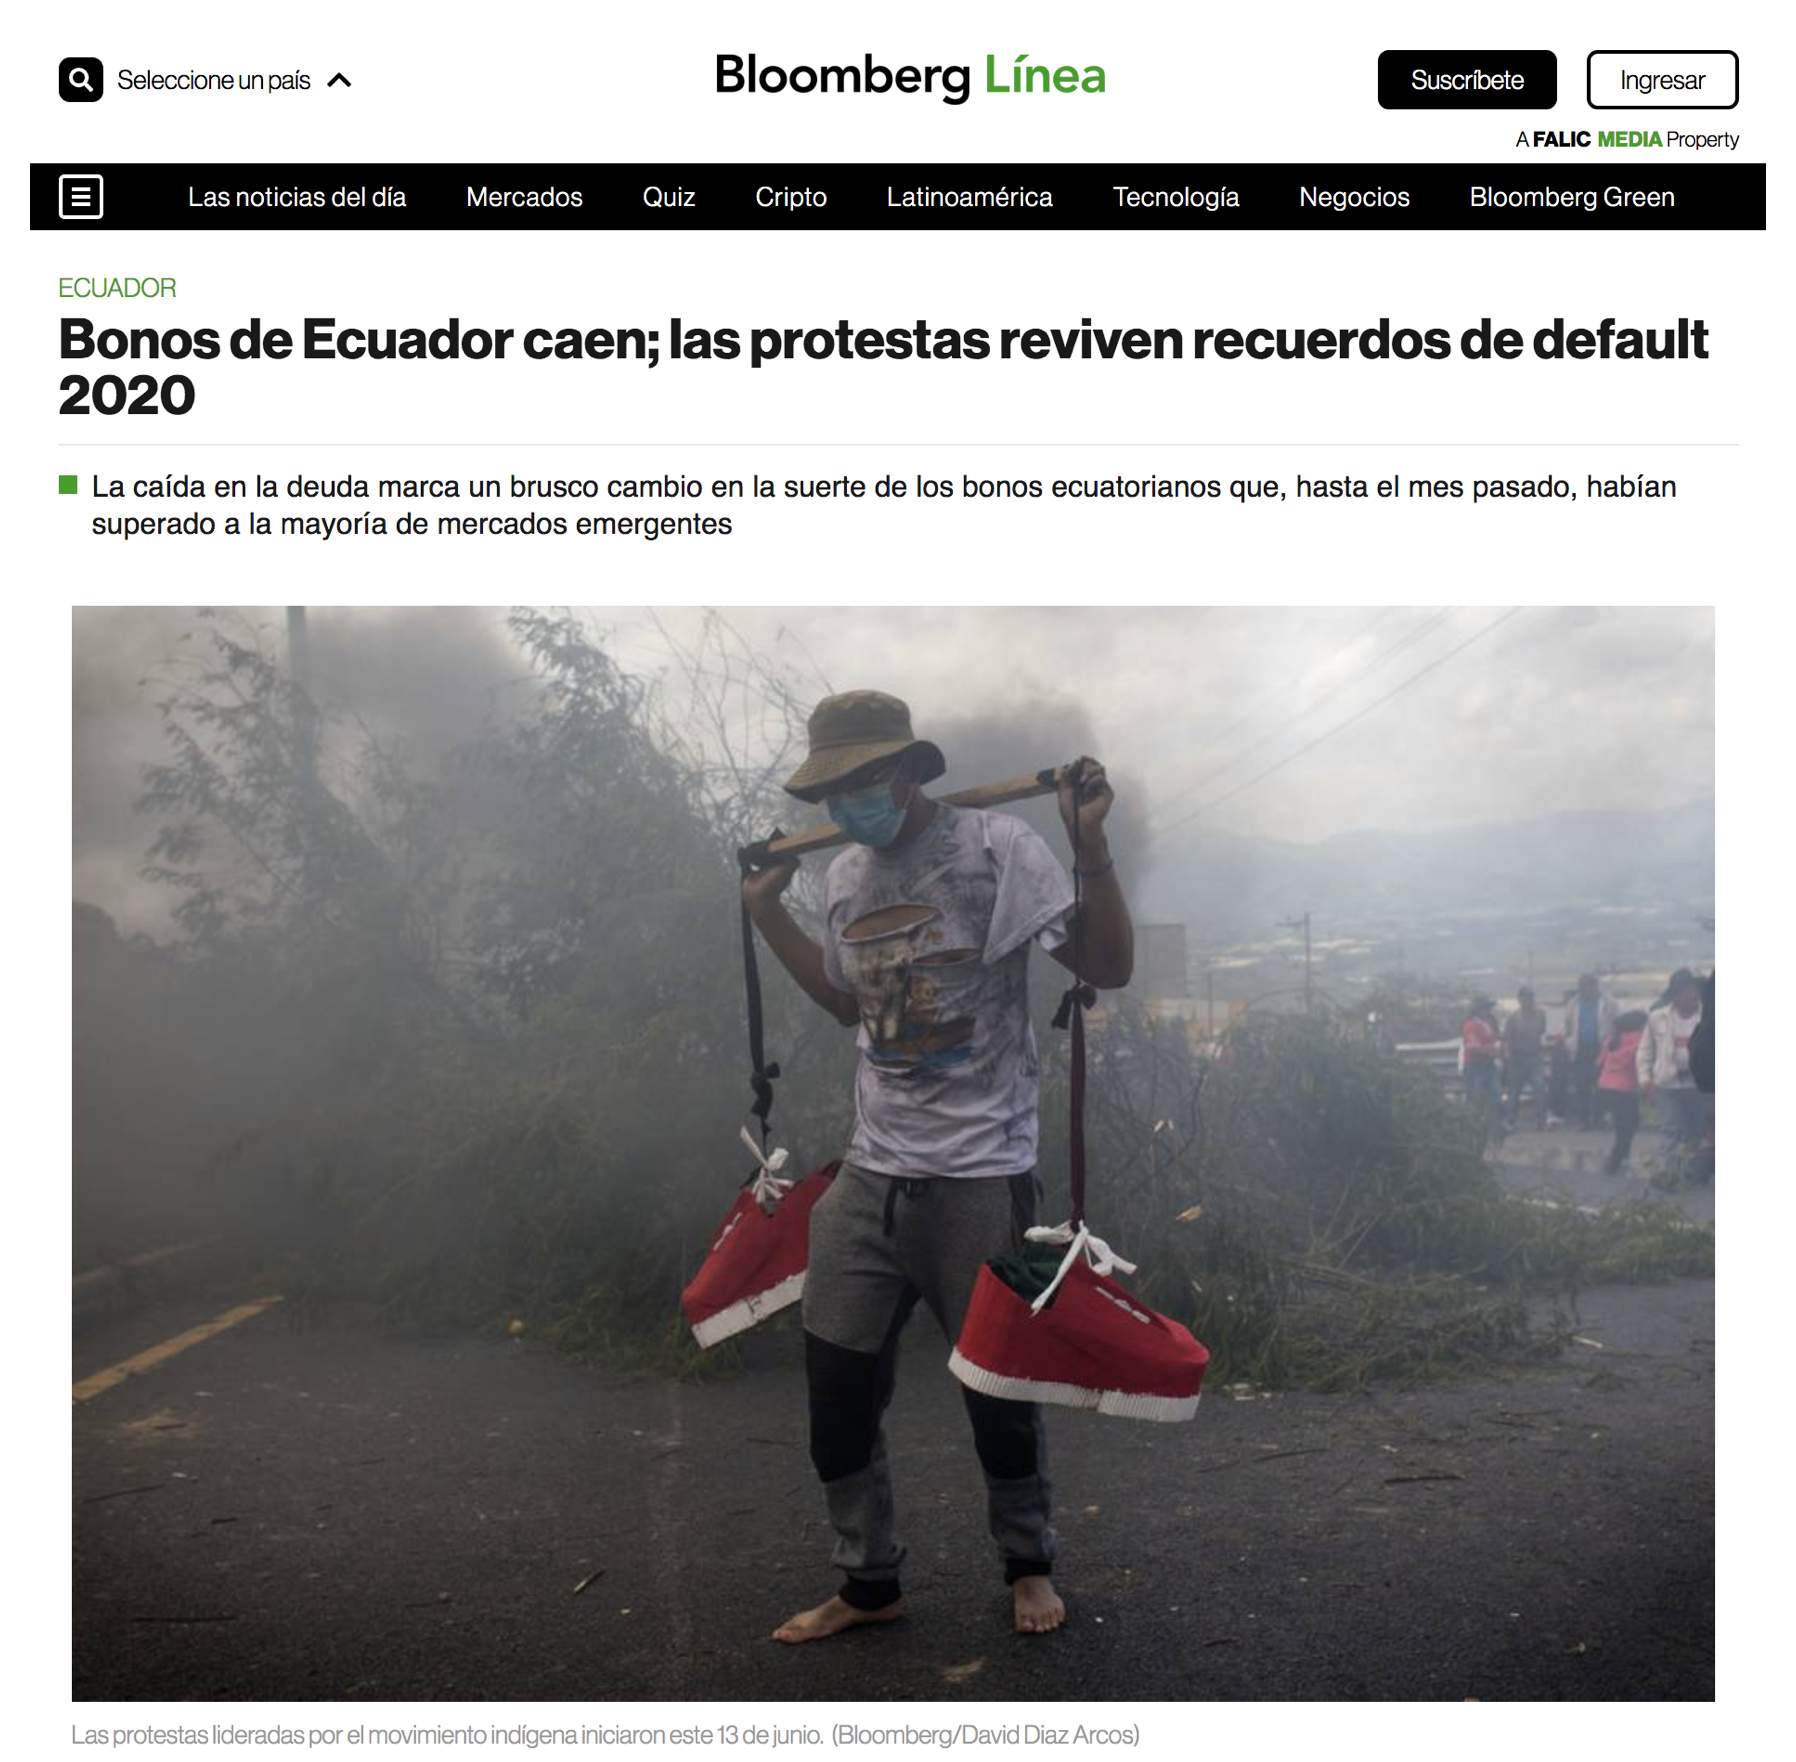 Bonos de Ecuador caen; las protestas reviven recuerdos de default 2020